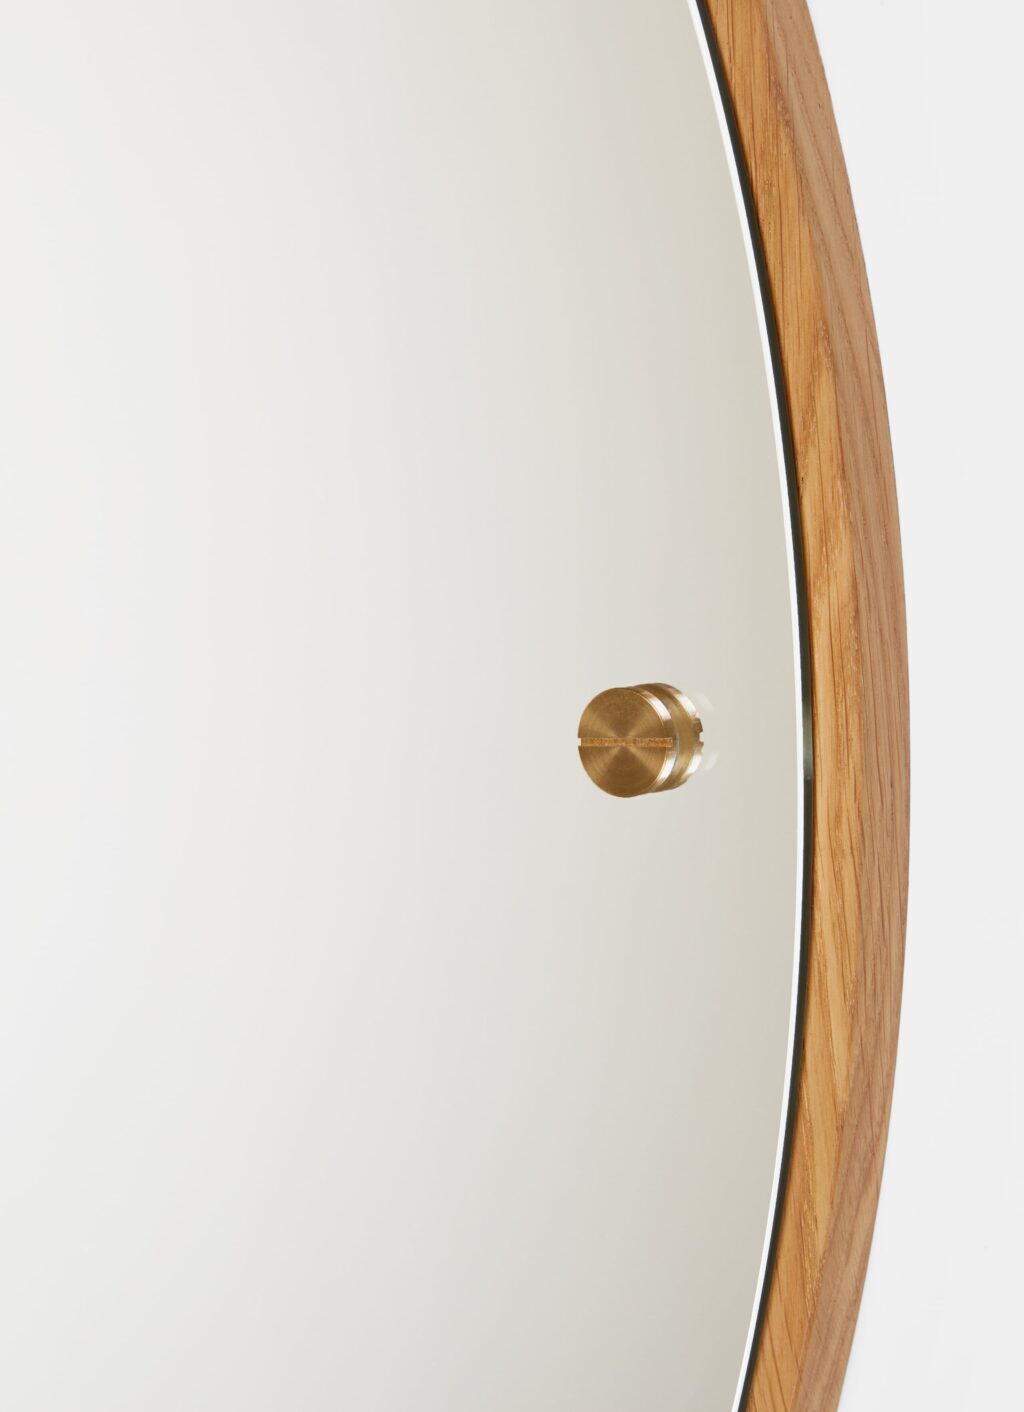 Frama - CM 1 - Circle Mirror - Large